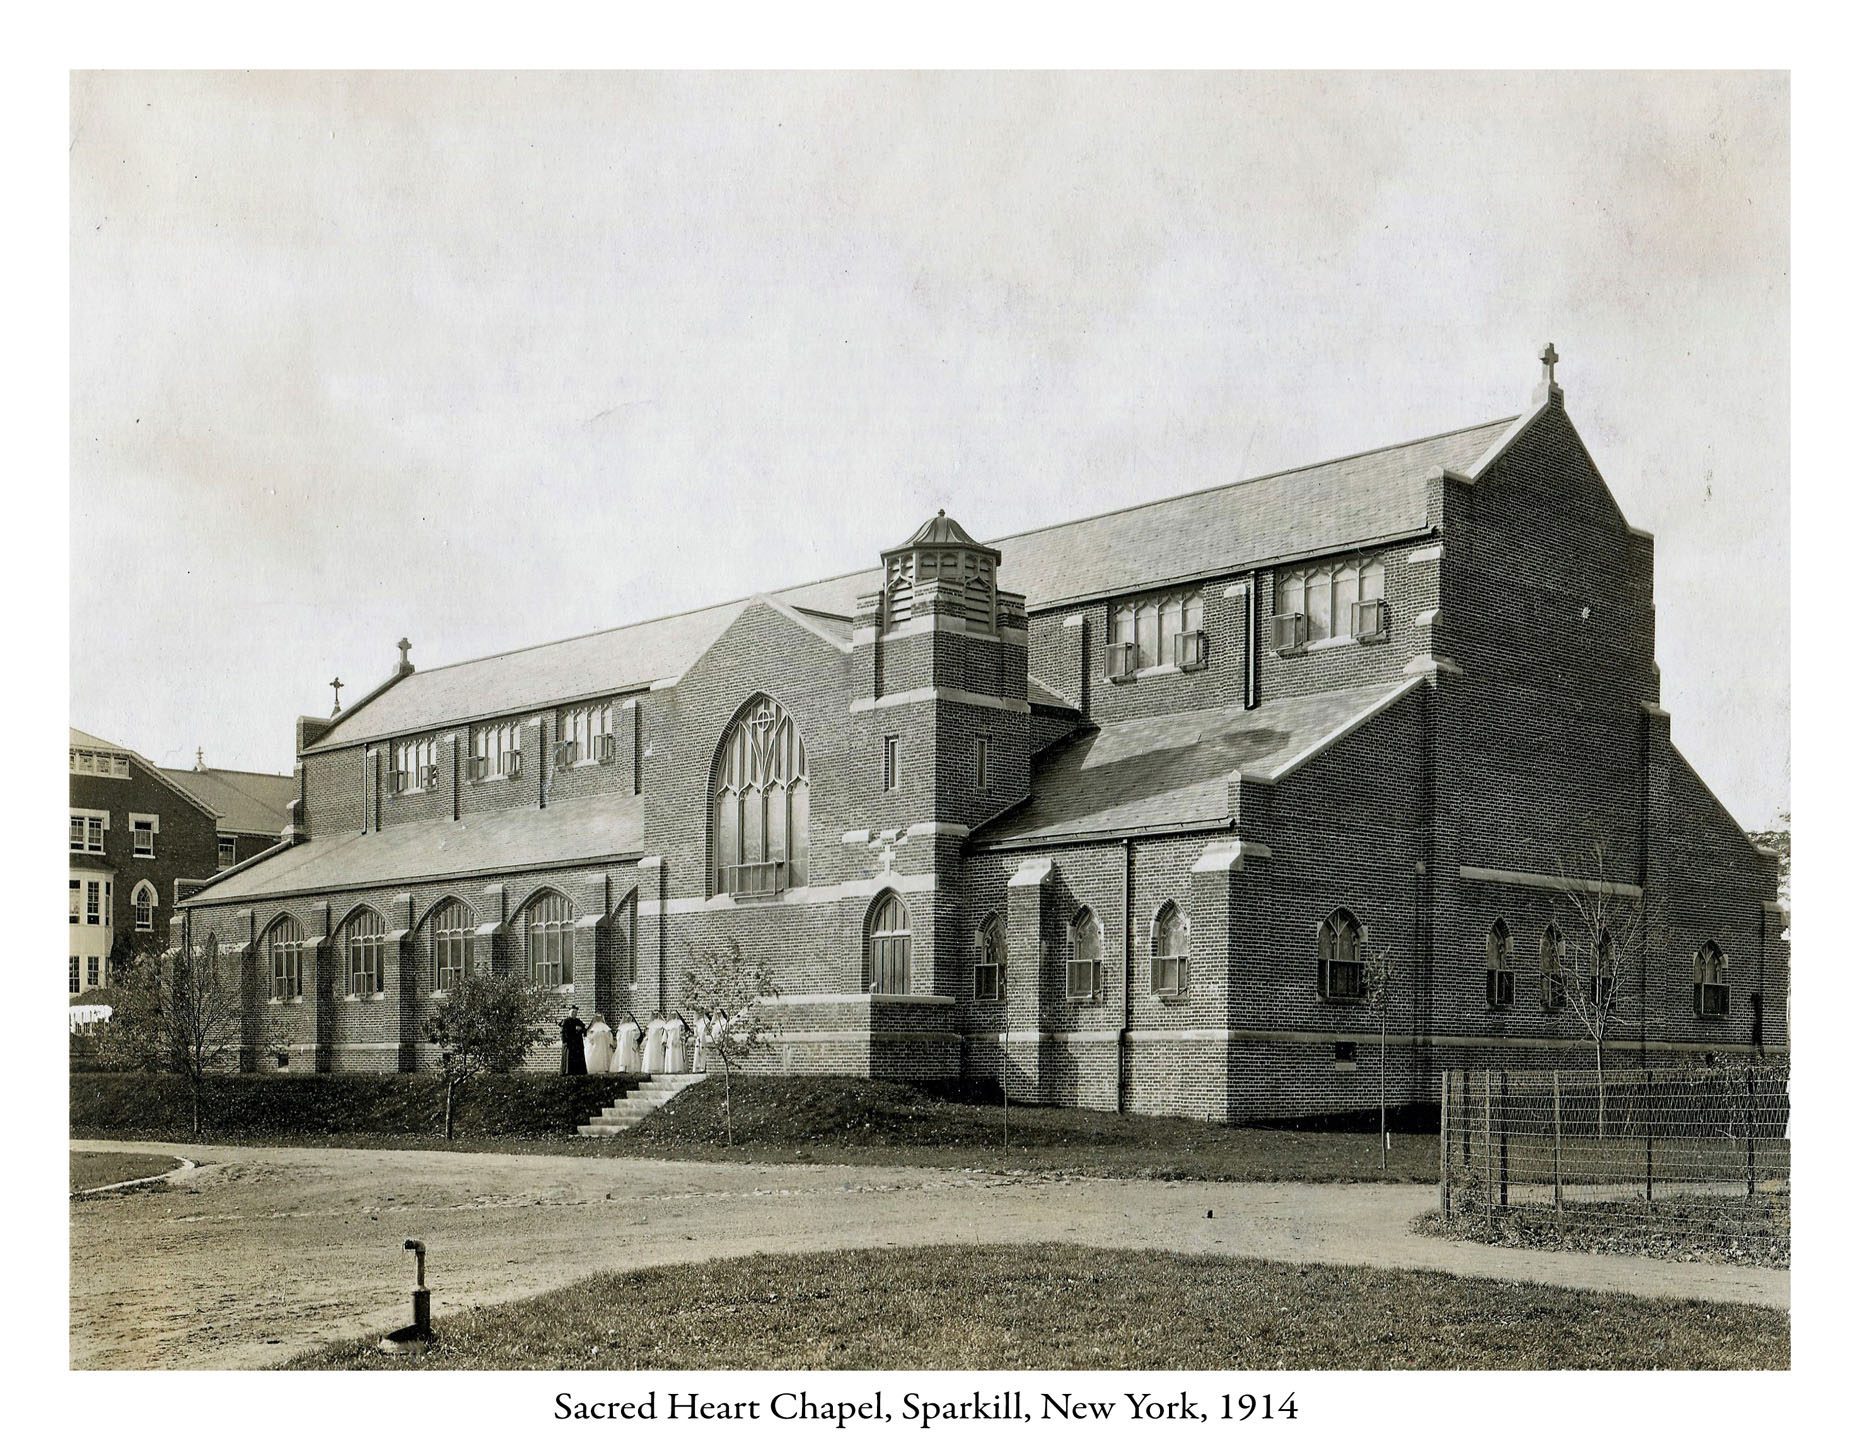 1914 – Dedication of Sacred Heart Chapel